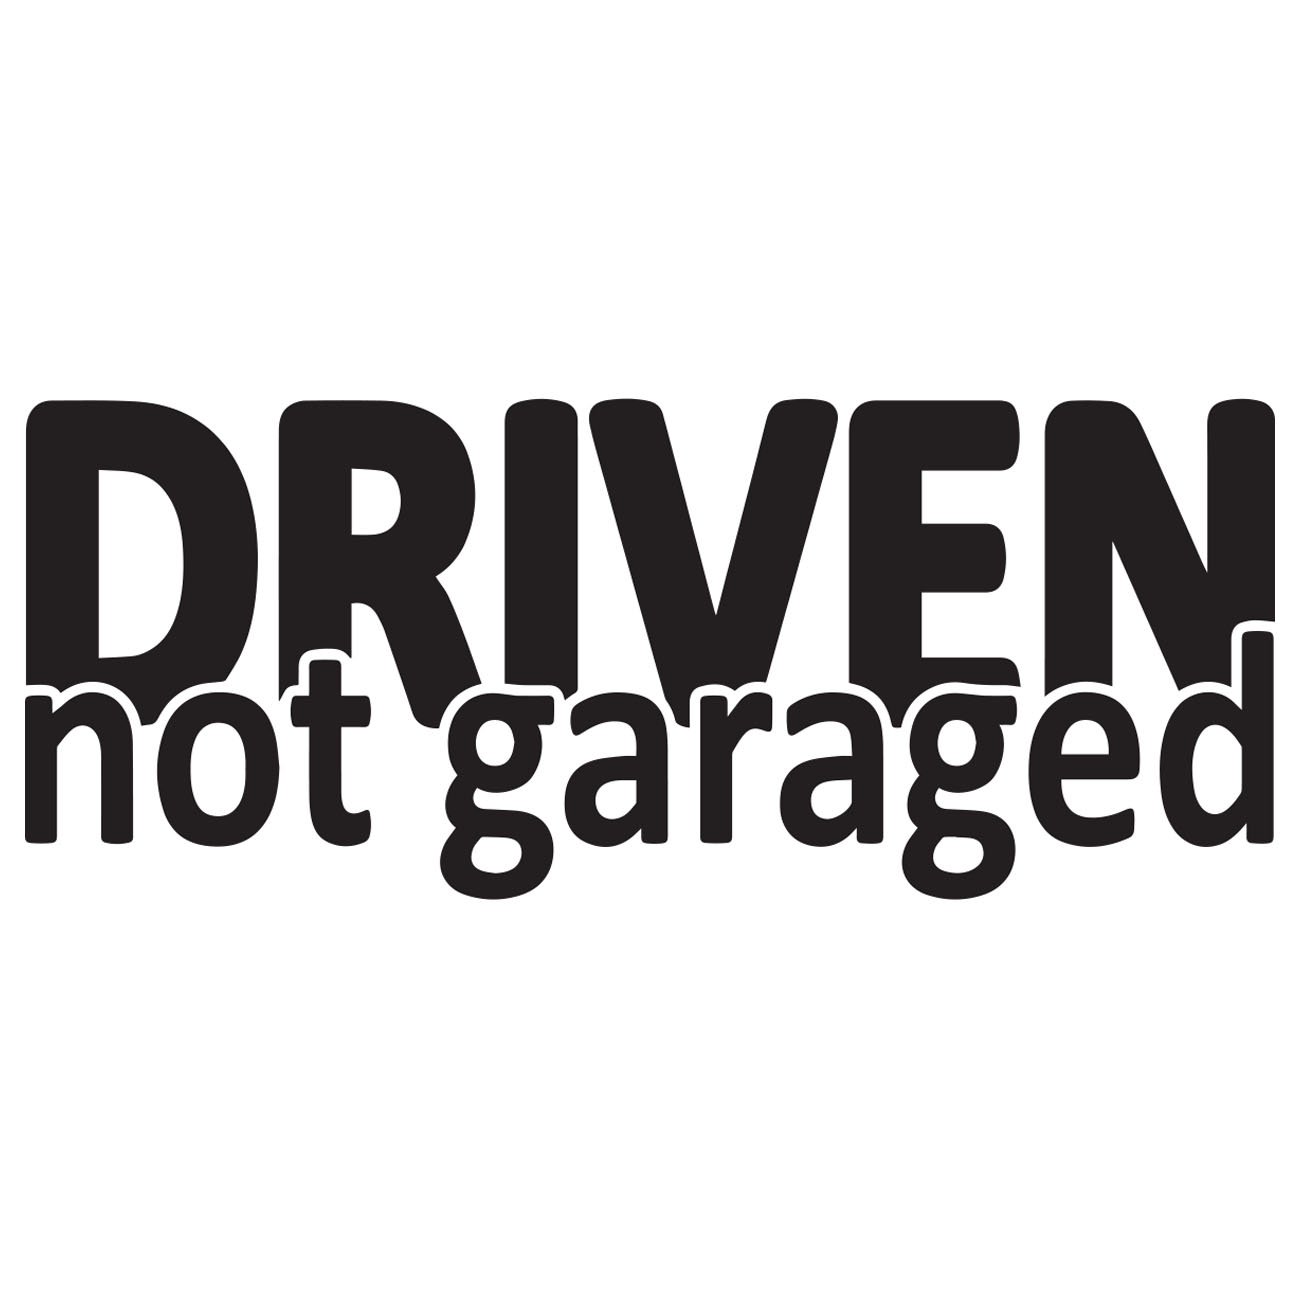 Driven not garaged